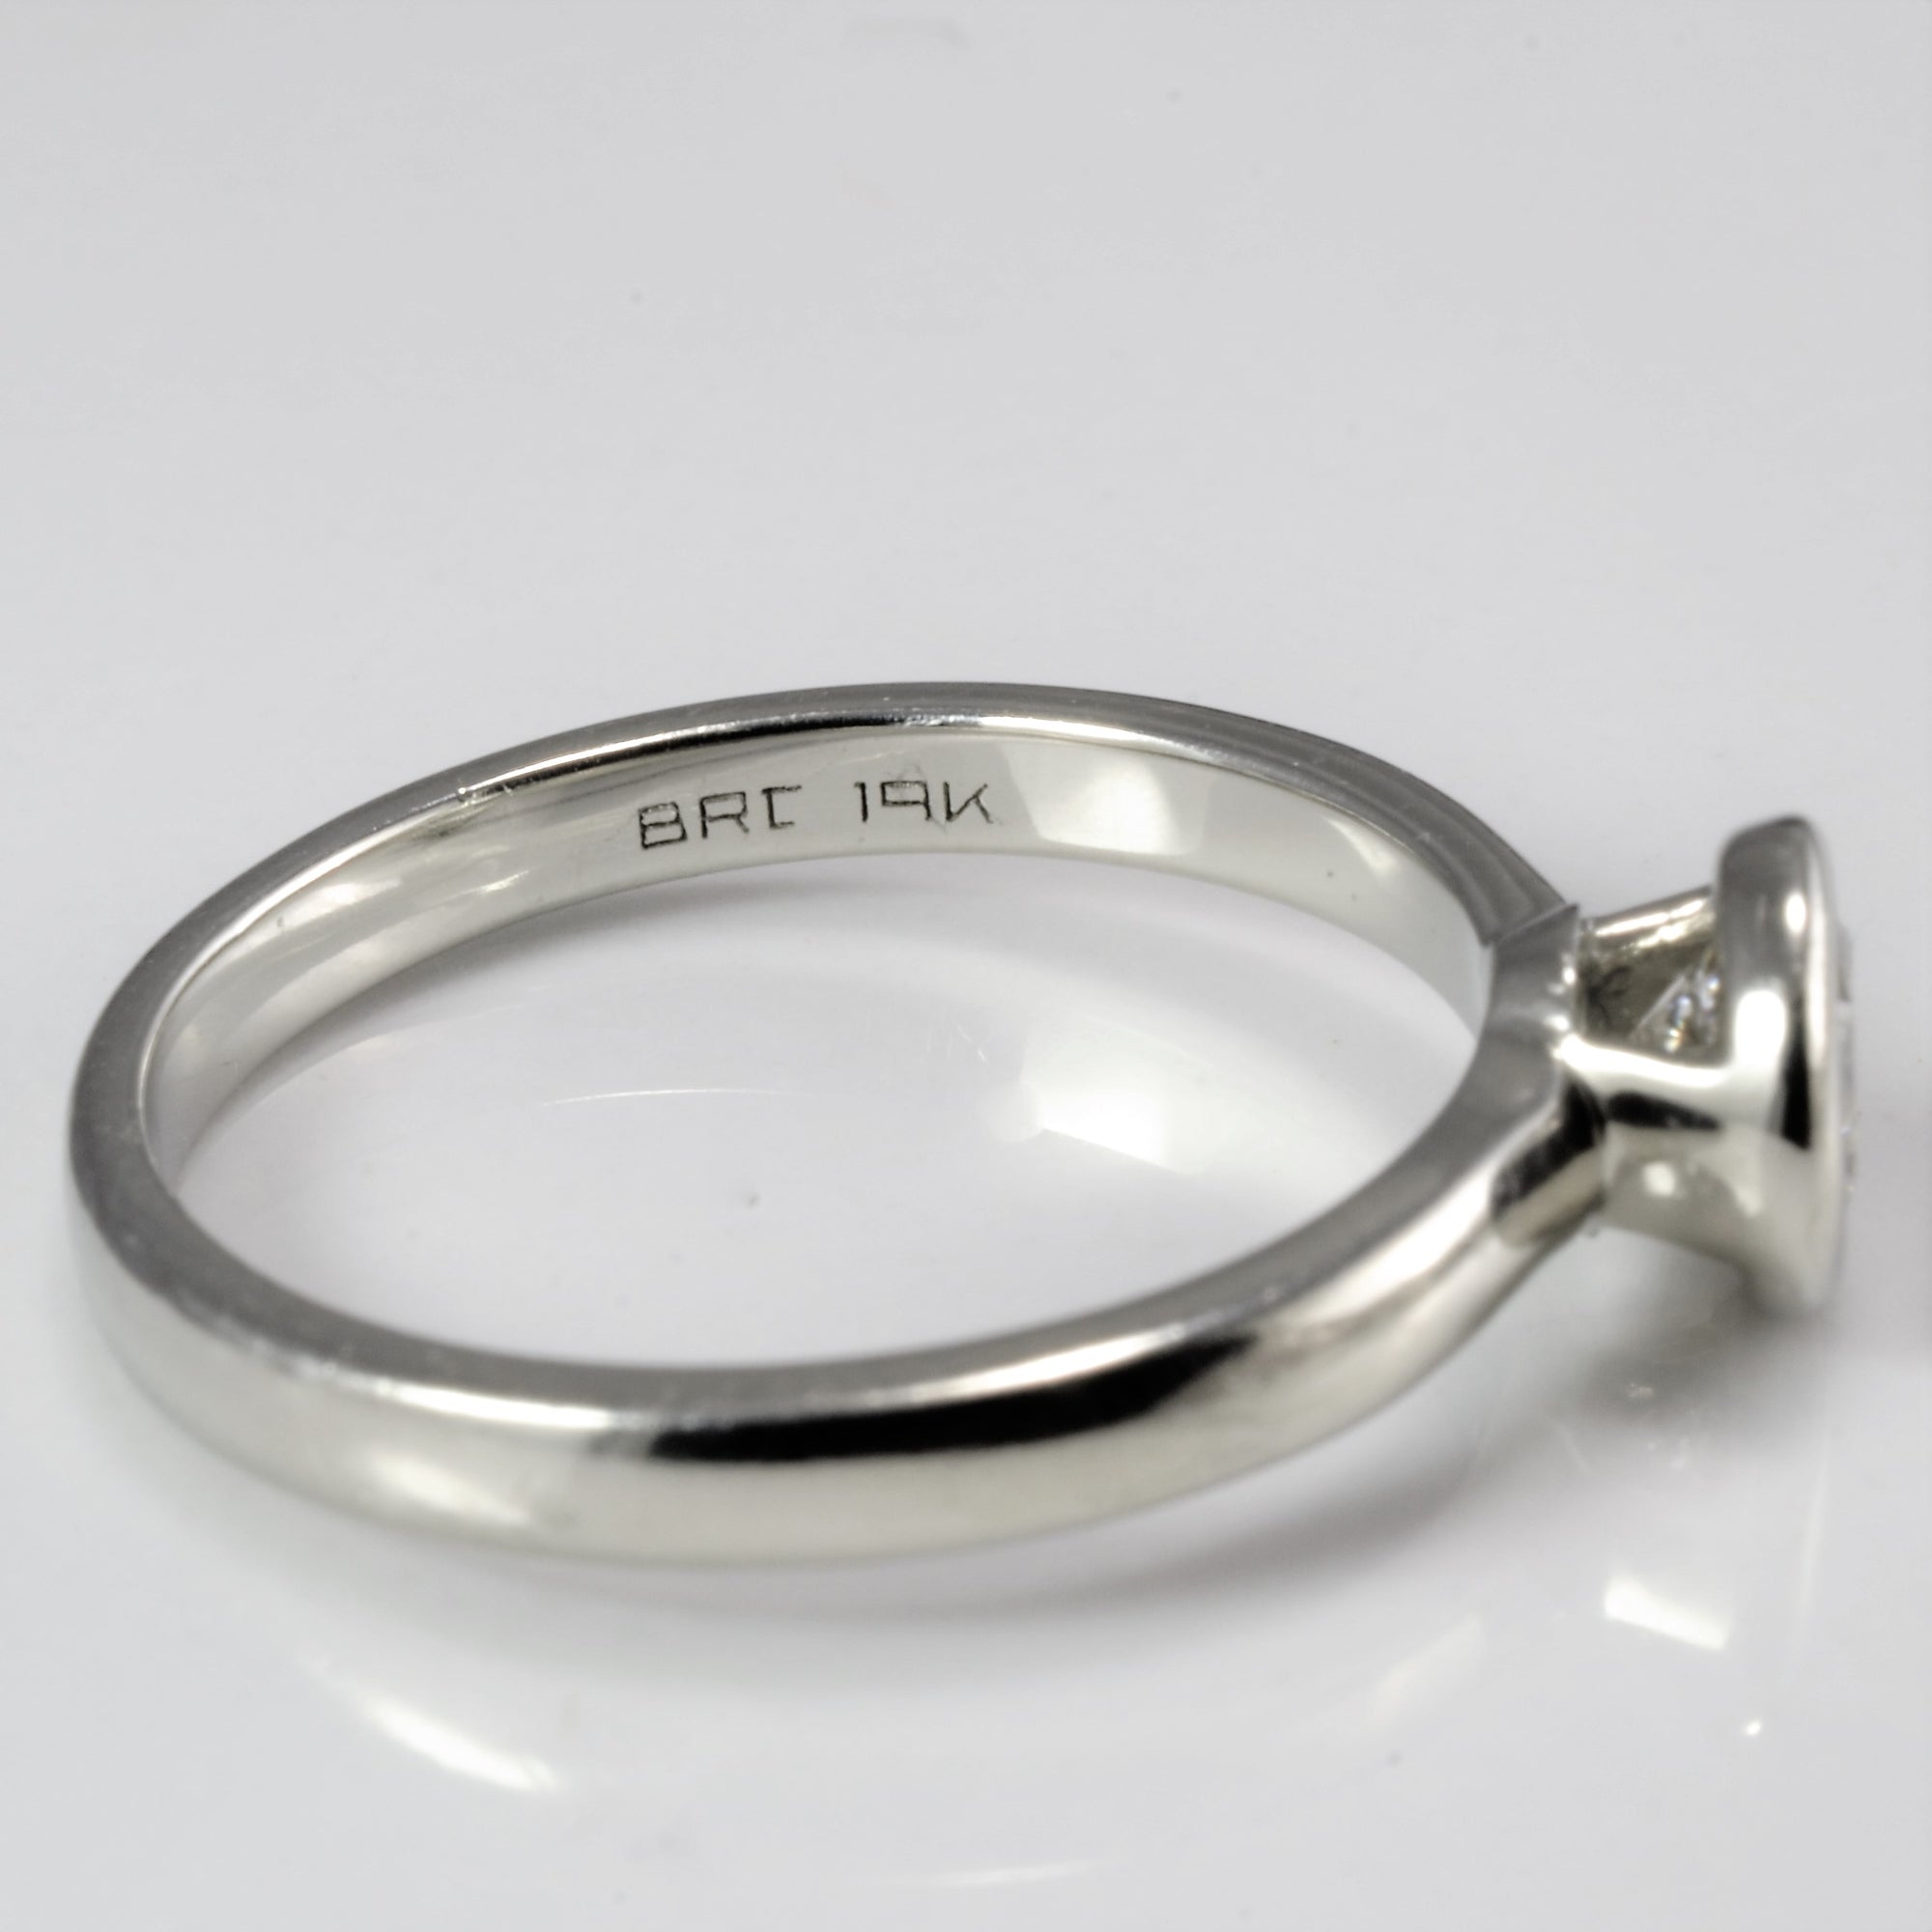 Bezel Set Solitaire Diamond Engagement Ring | 0.46 ct, SZ 6 |